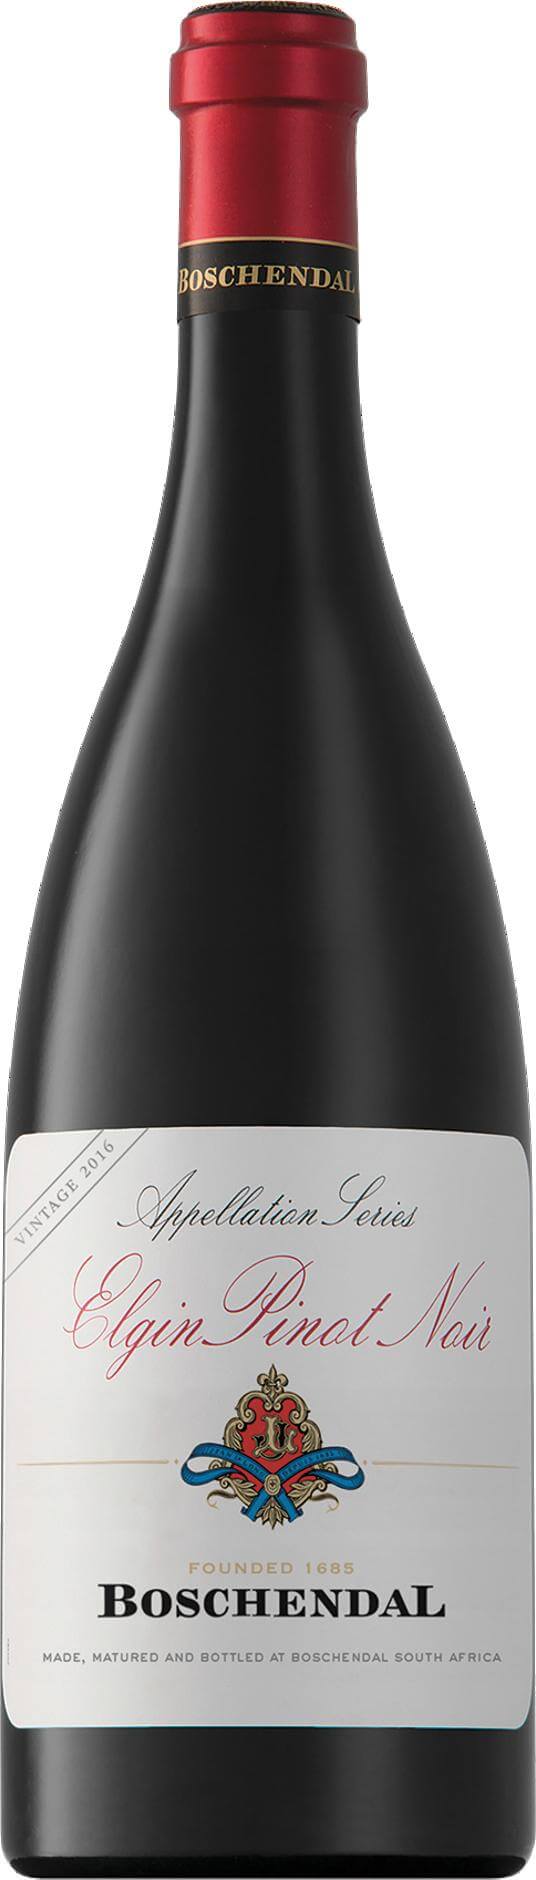 Boschendal Elgin Pinot Noir 2021